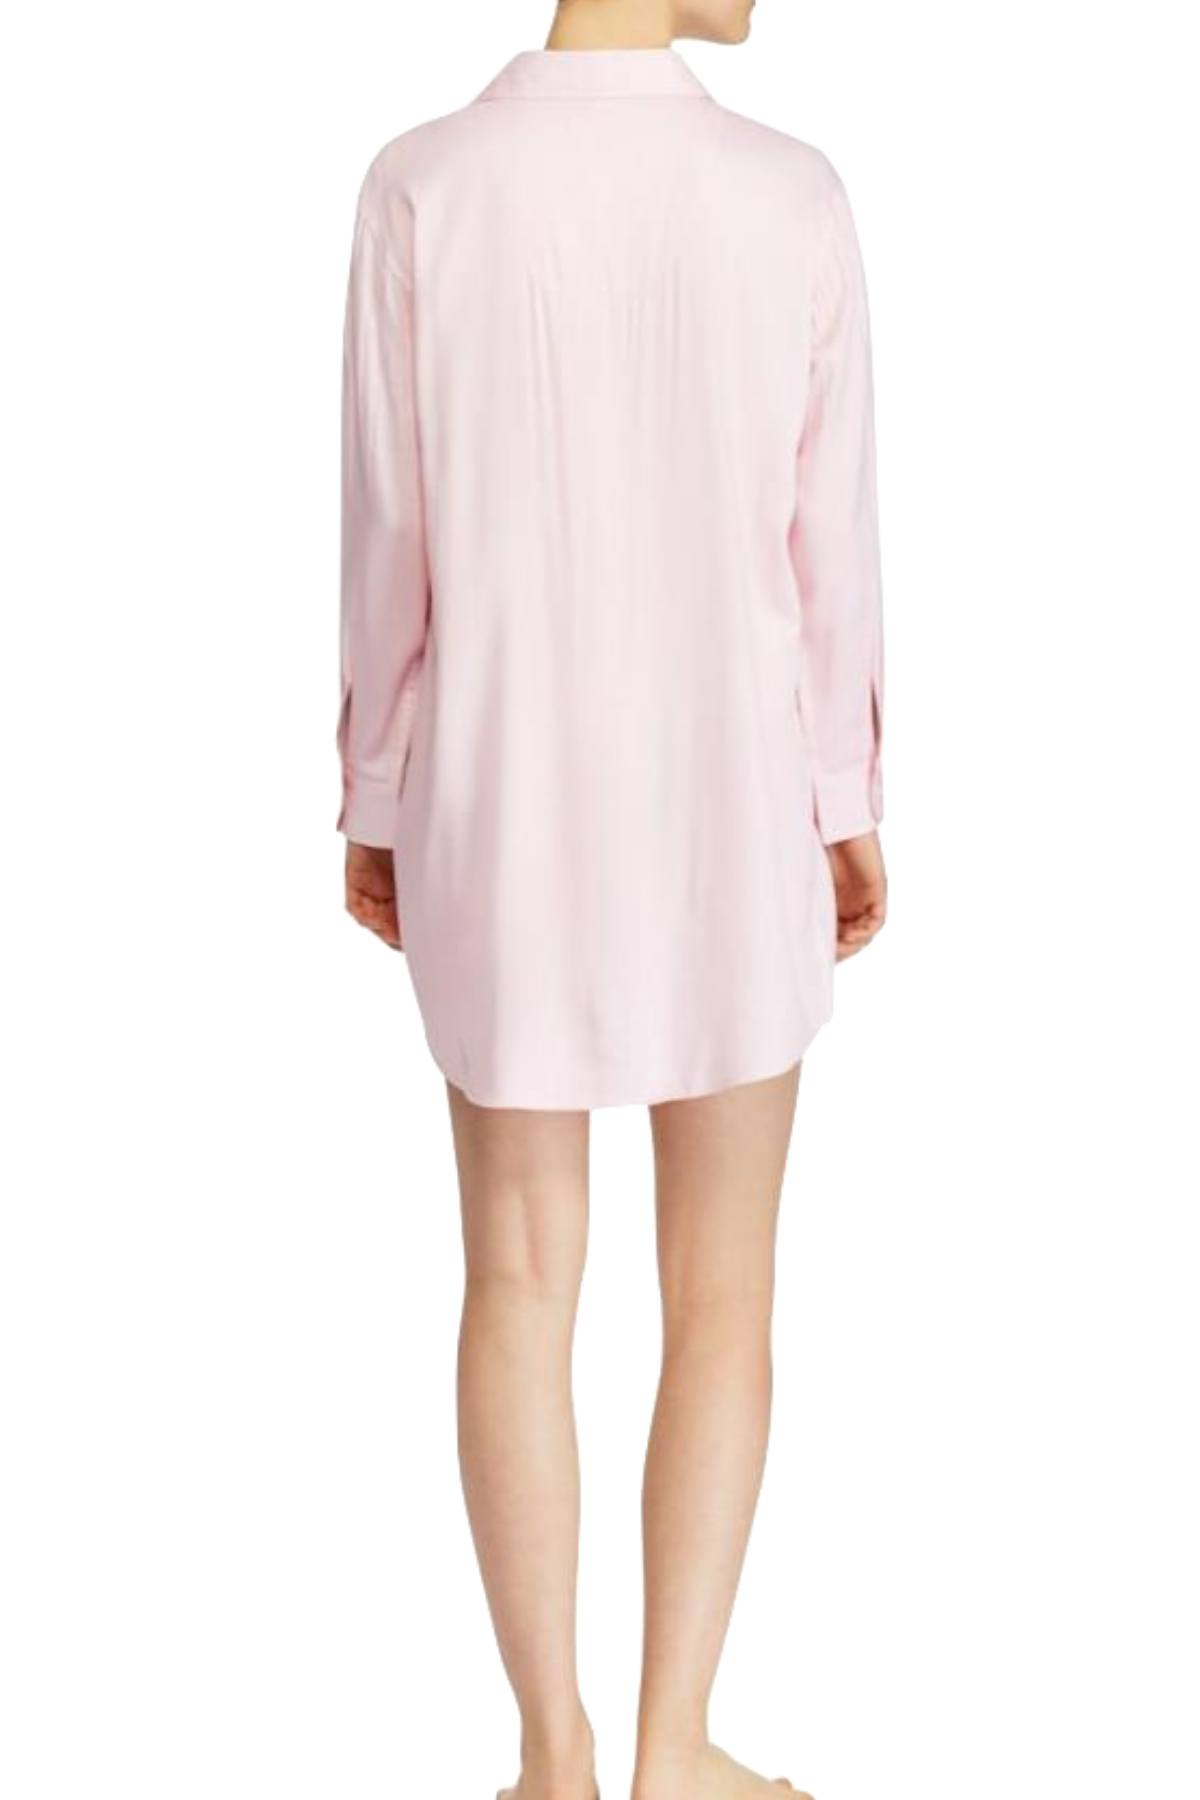 Lauren Ralph Lauren Pink-Herringbone Sateen Sleepshirt